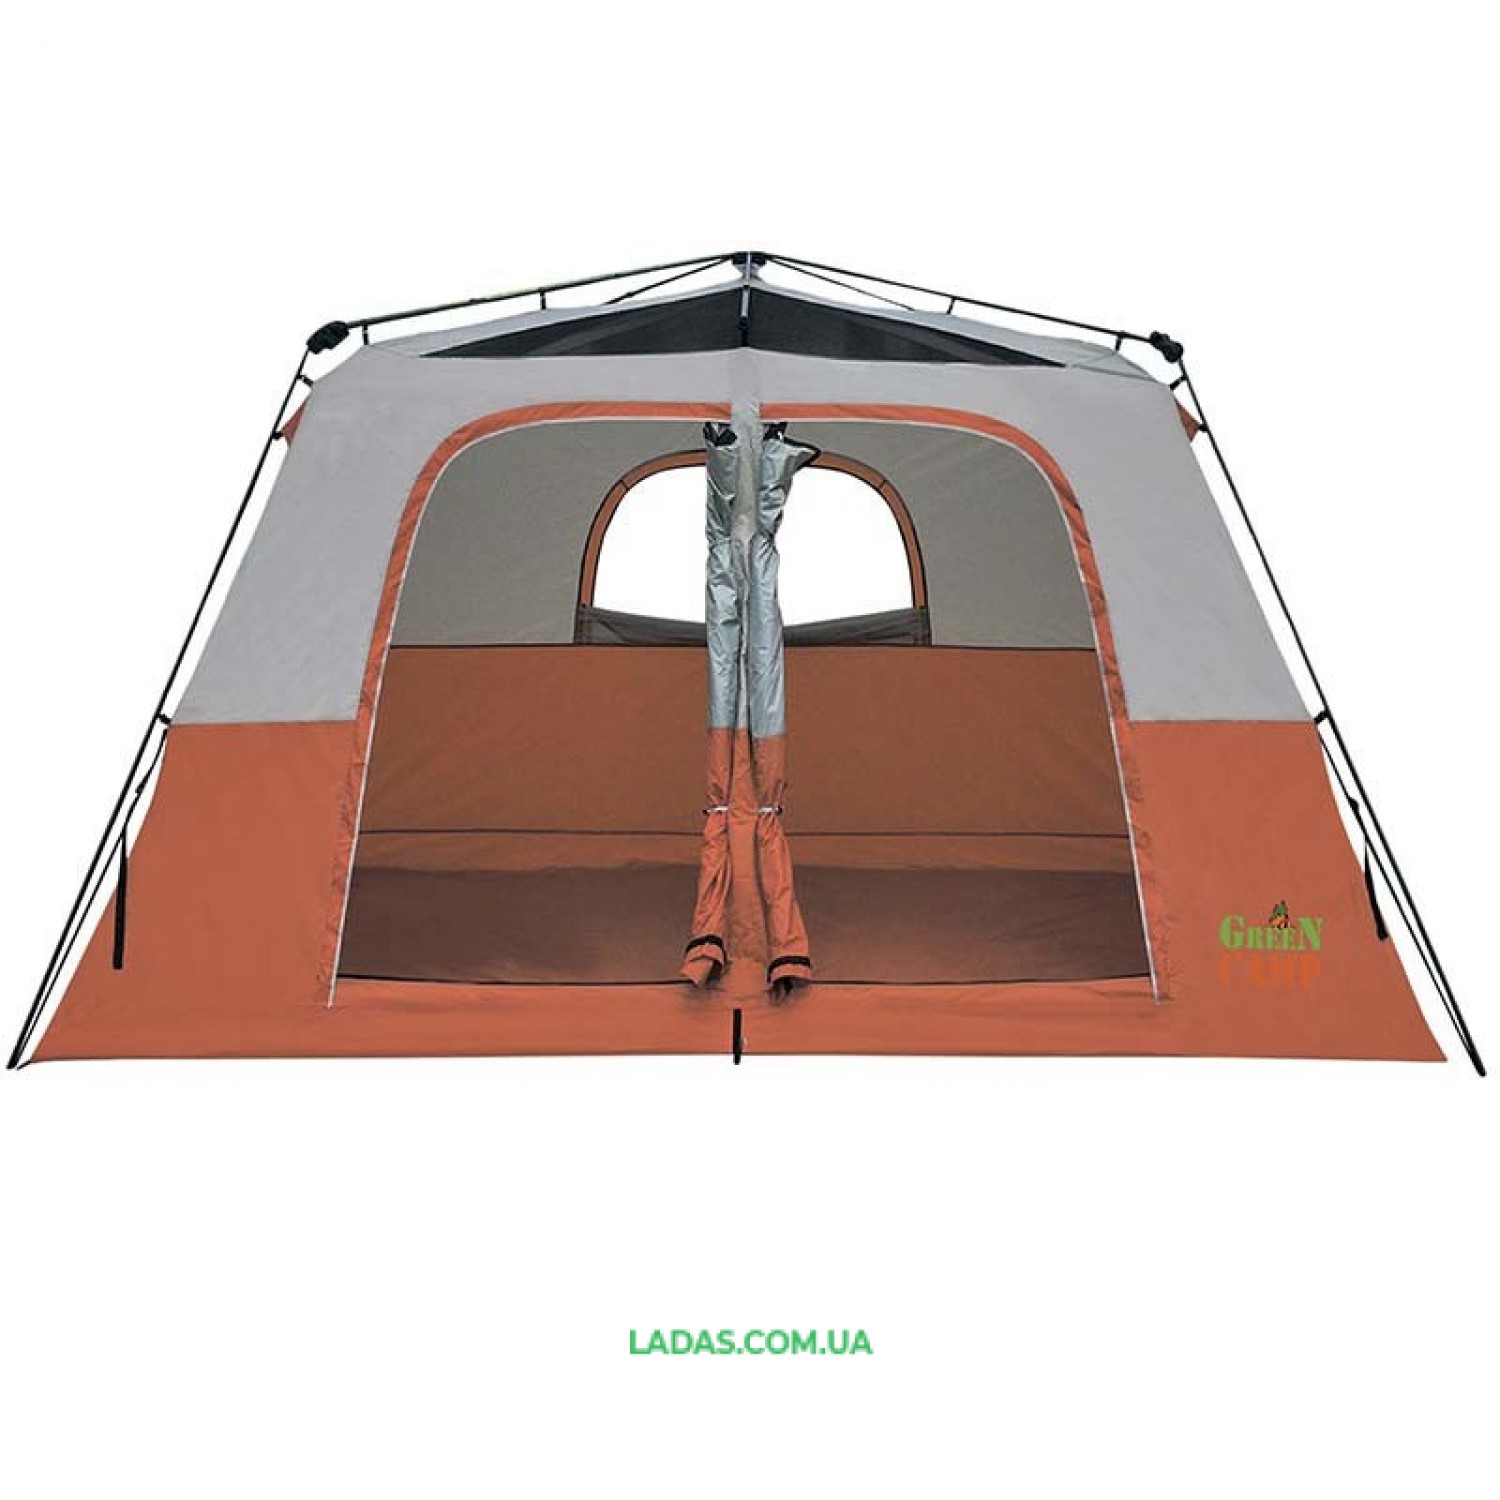 Палатка 6-ти местная GreenCamp GC1610, автомат(р-р 390 х 270 х 180/210 см, оранжевый)